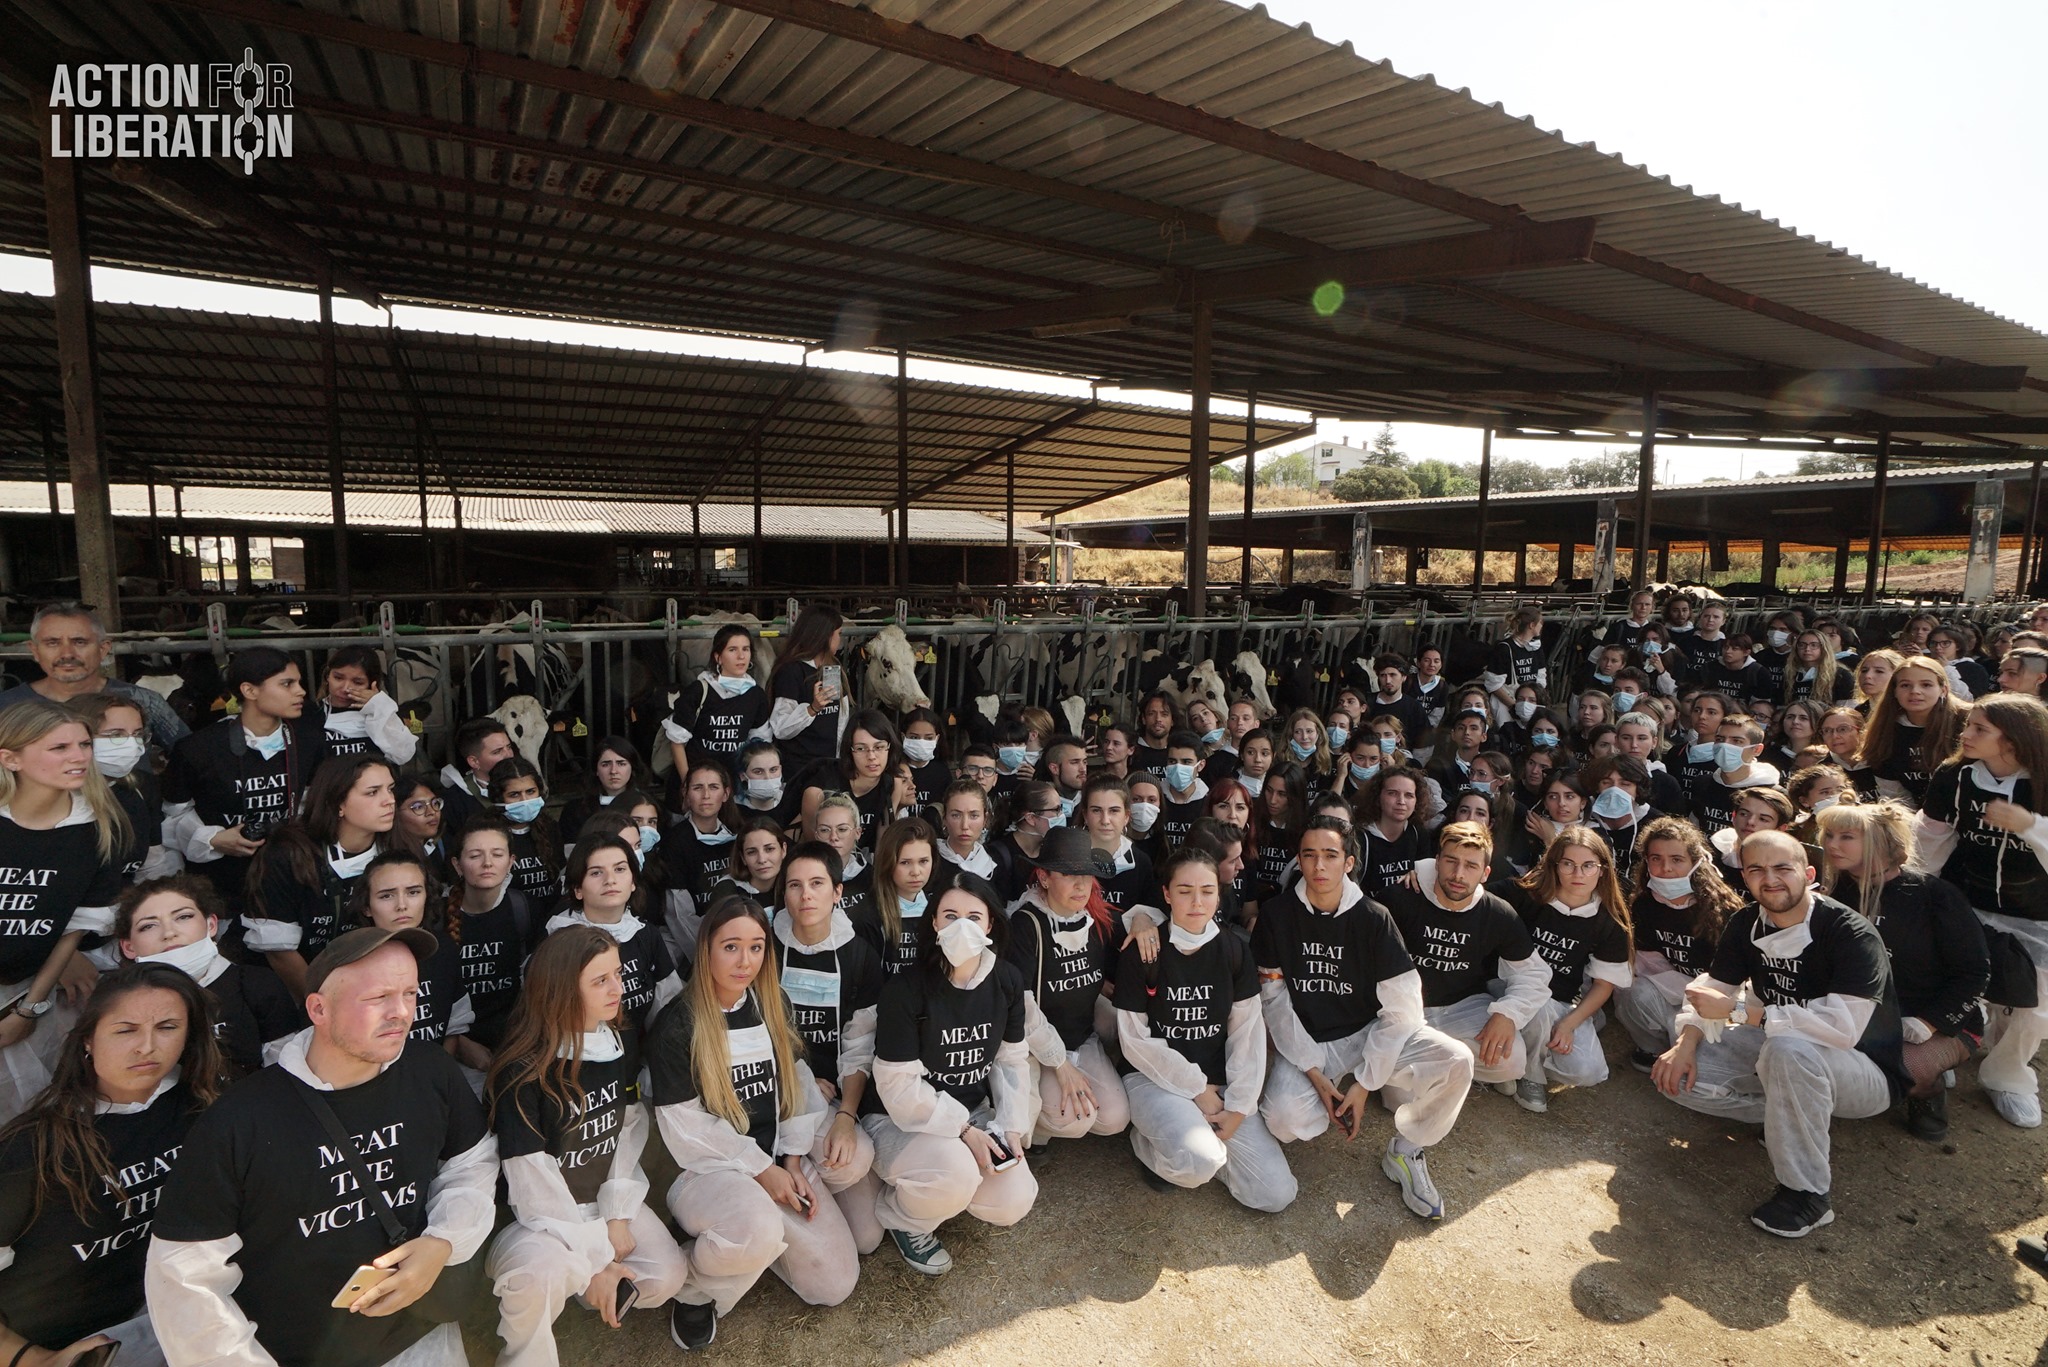 Diumenge 150 persones accedien sense permís a una granja de Sant Antoni de Vilamajor | ACN